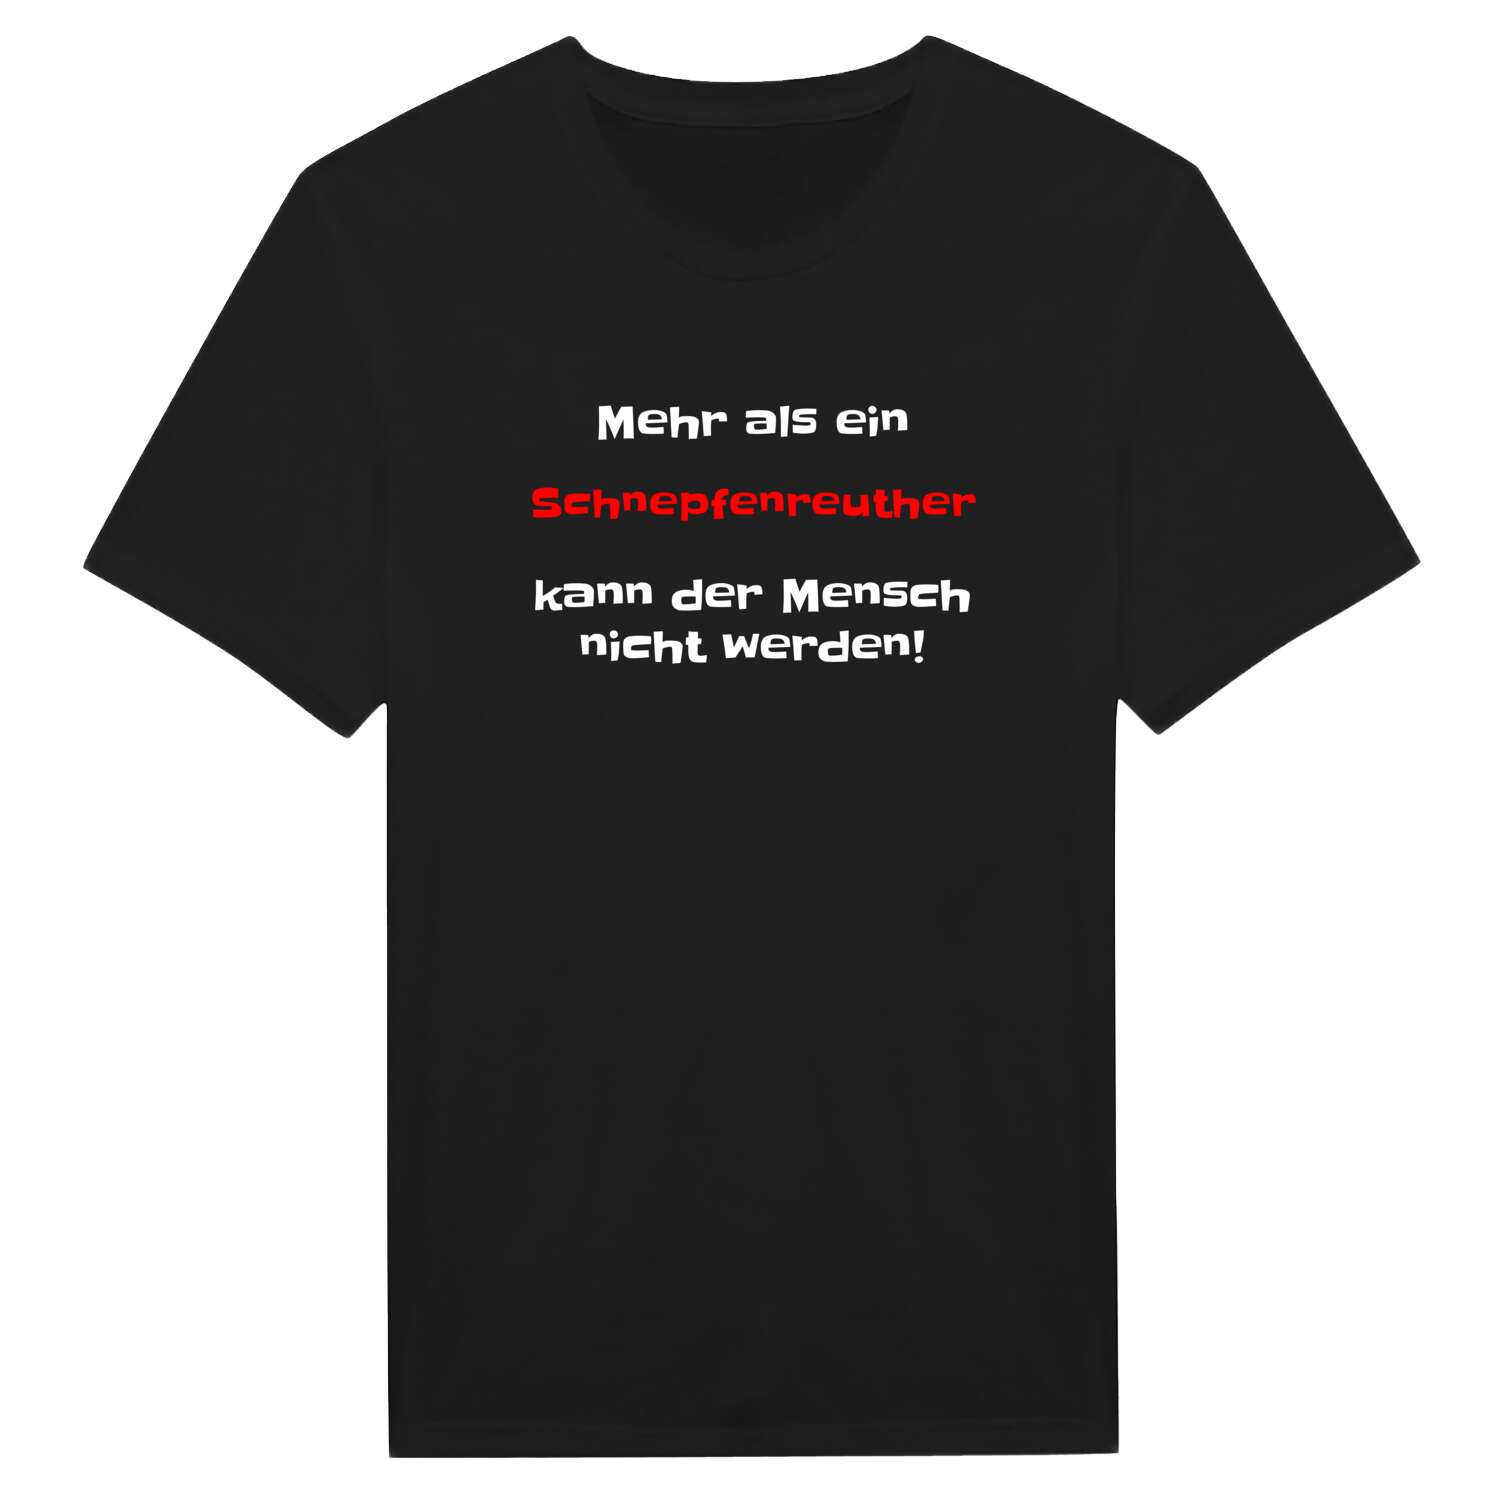 Schnepfenreuth T-Shirt »Mehr als ein«